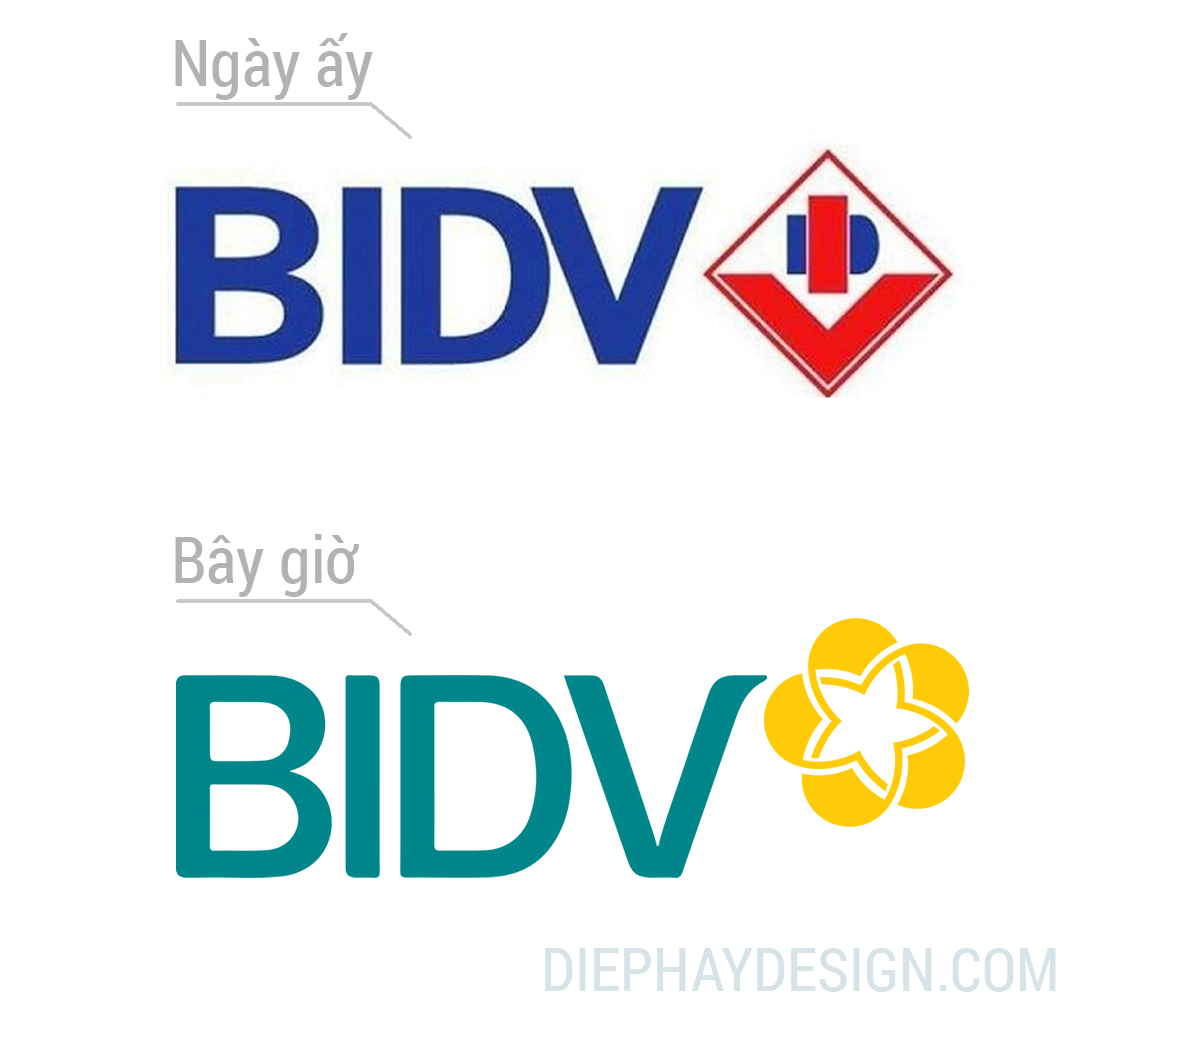 thiet-ke-logo-bidv-3Z